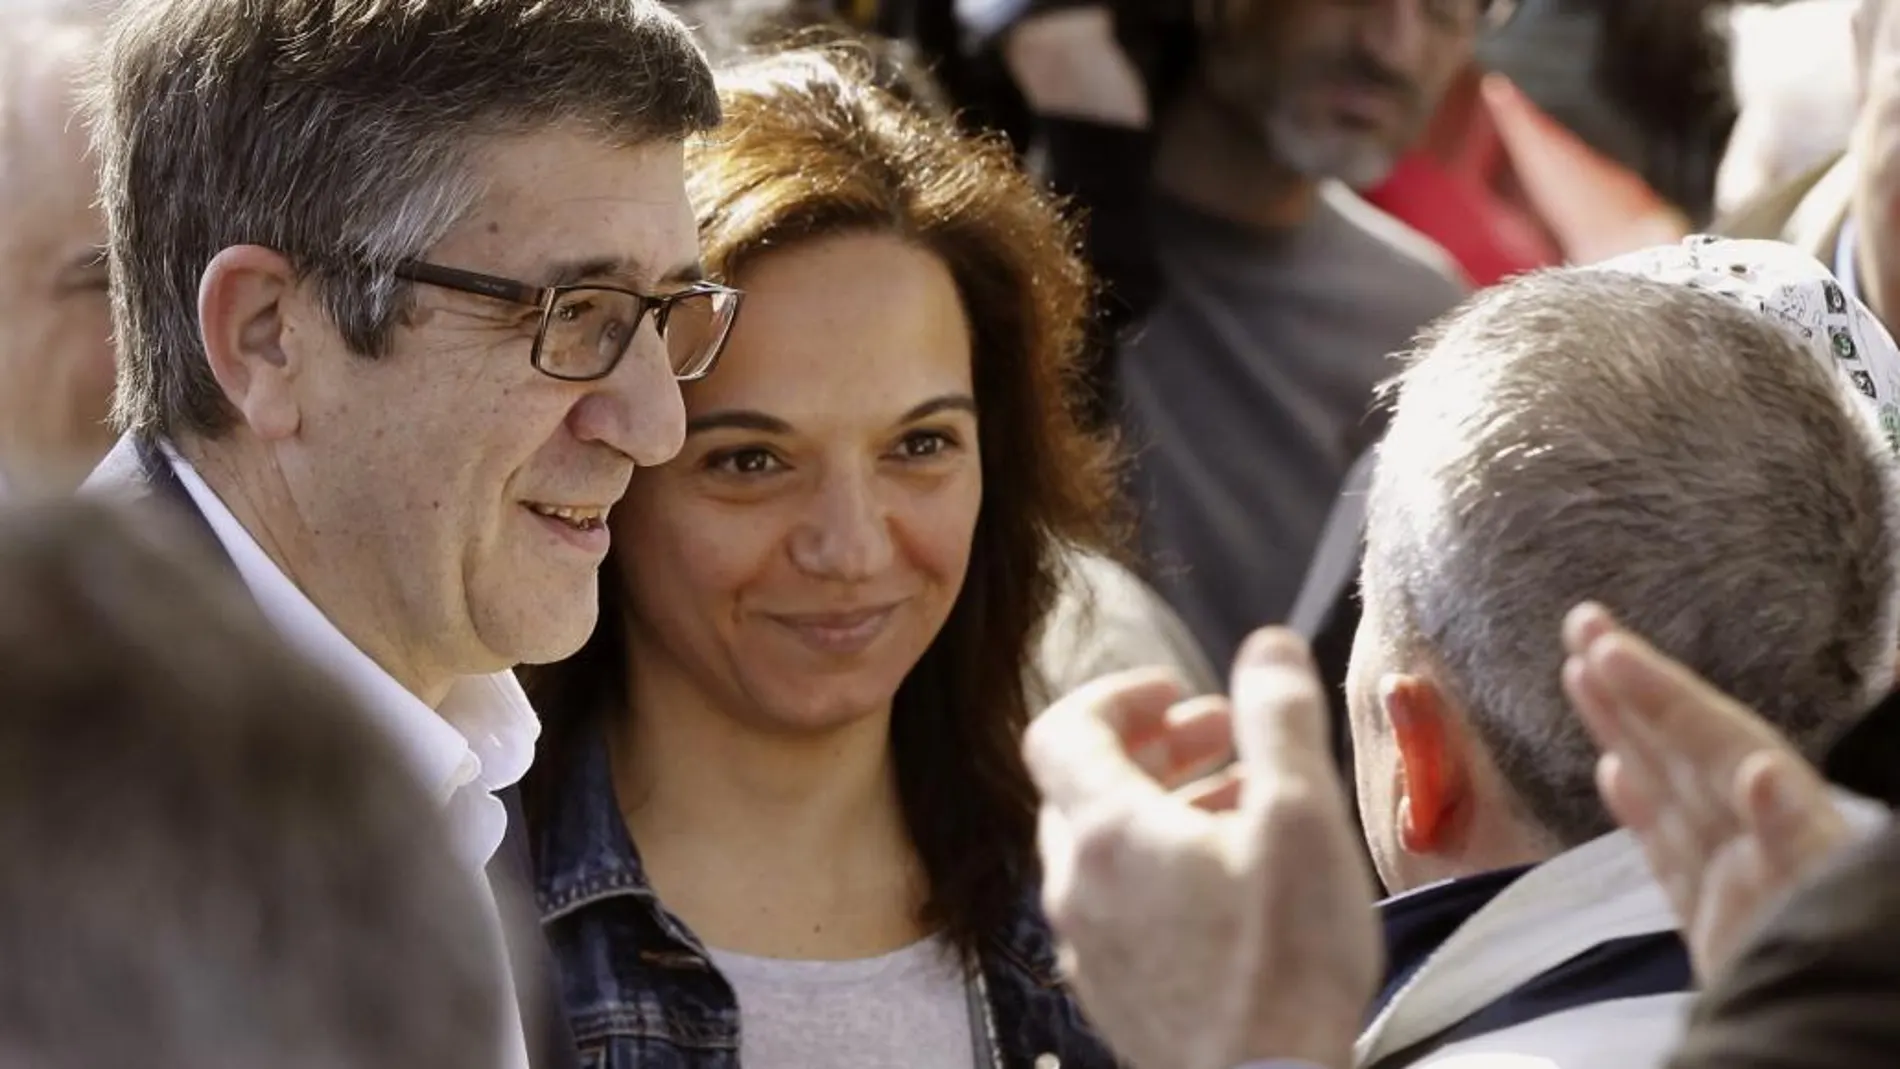 El aspirante a secretario general del PSOE Patxi López, junto a la alcaldesa de Getafe y líder del partido en Madrid, Sara Hernández, durante el acto celebrado hoy en la localidad madrileña